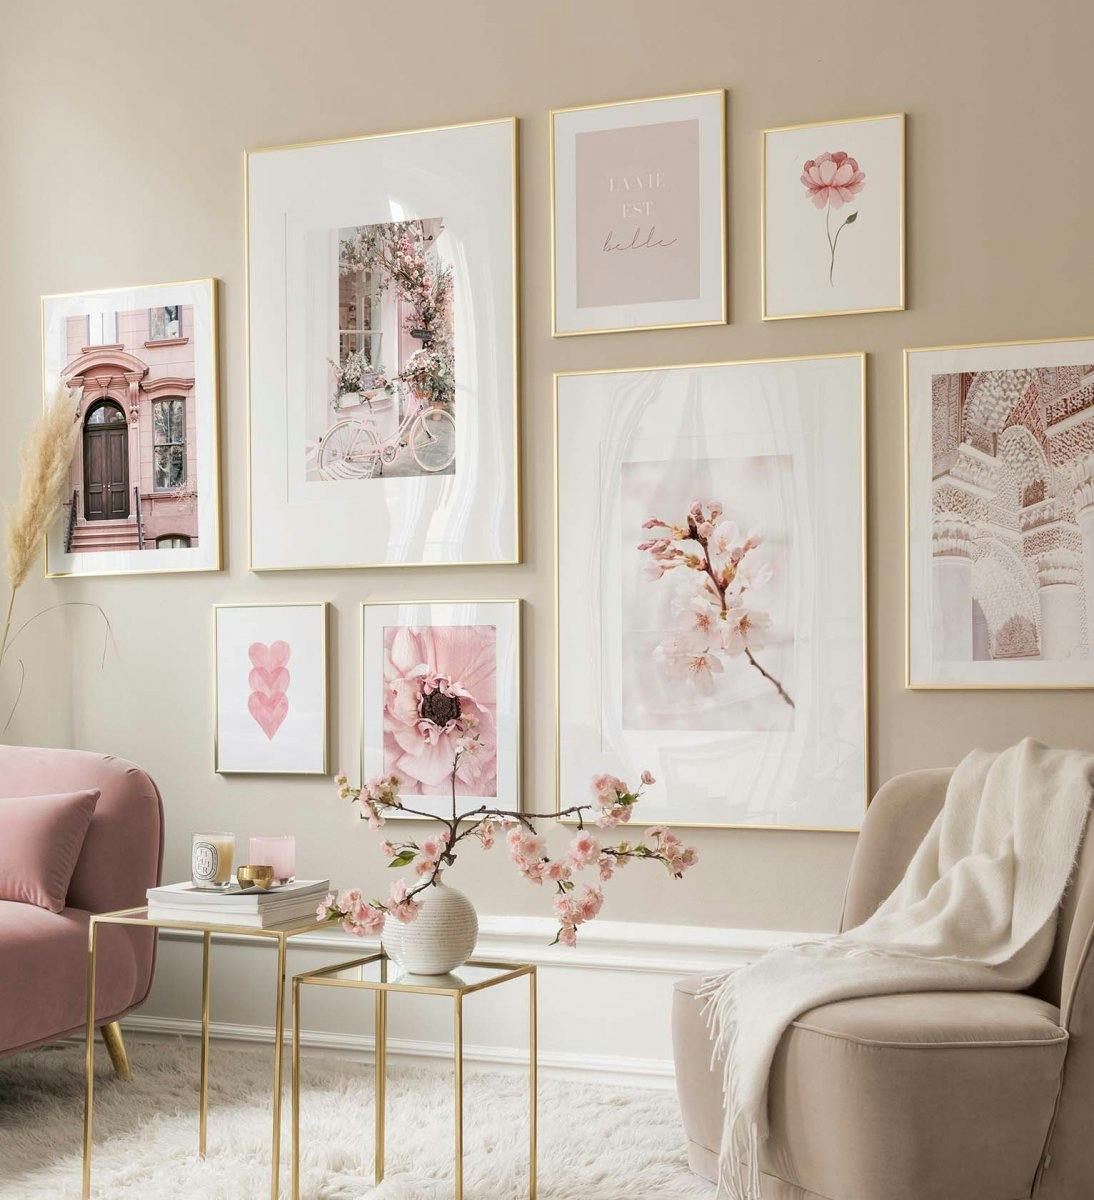 لوحات فنية جدارية وصور فوتوغرافية باللون الوردي لتزيين غرفة المعيشة أو غرفة النوم